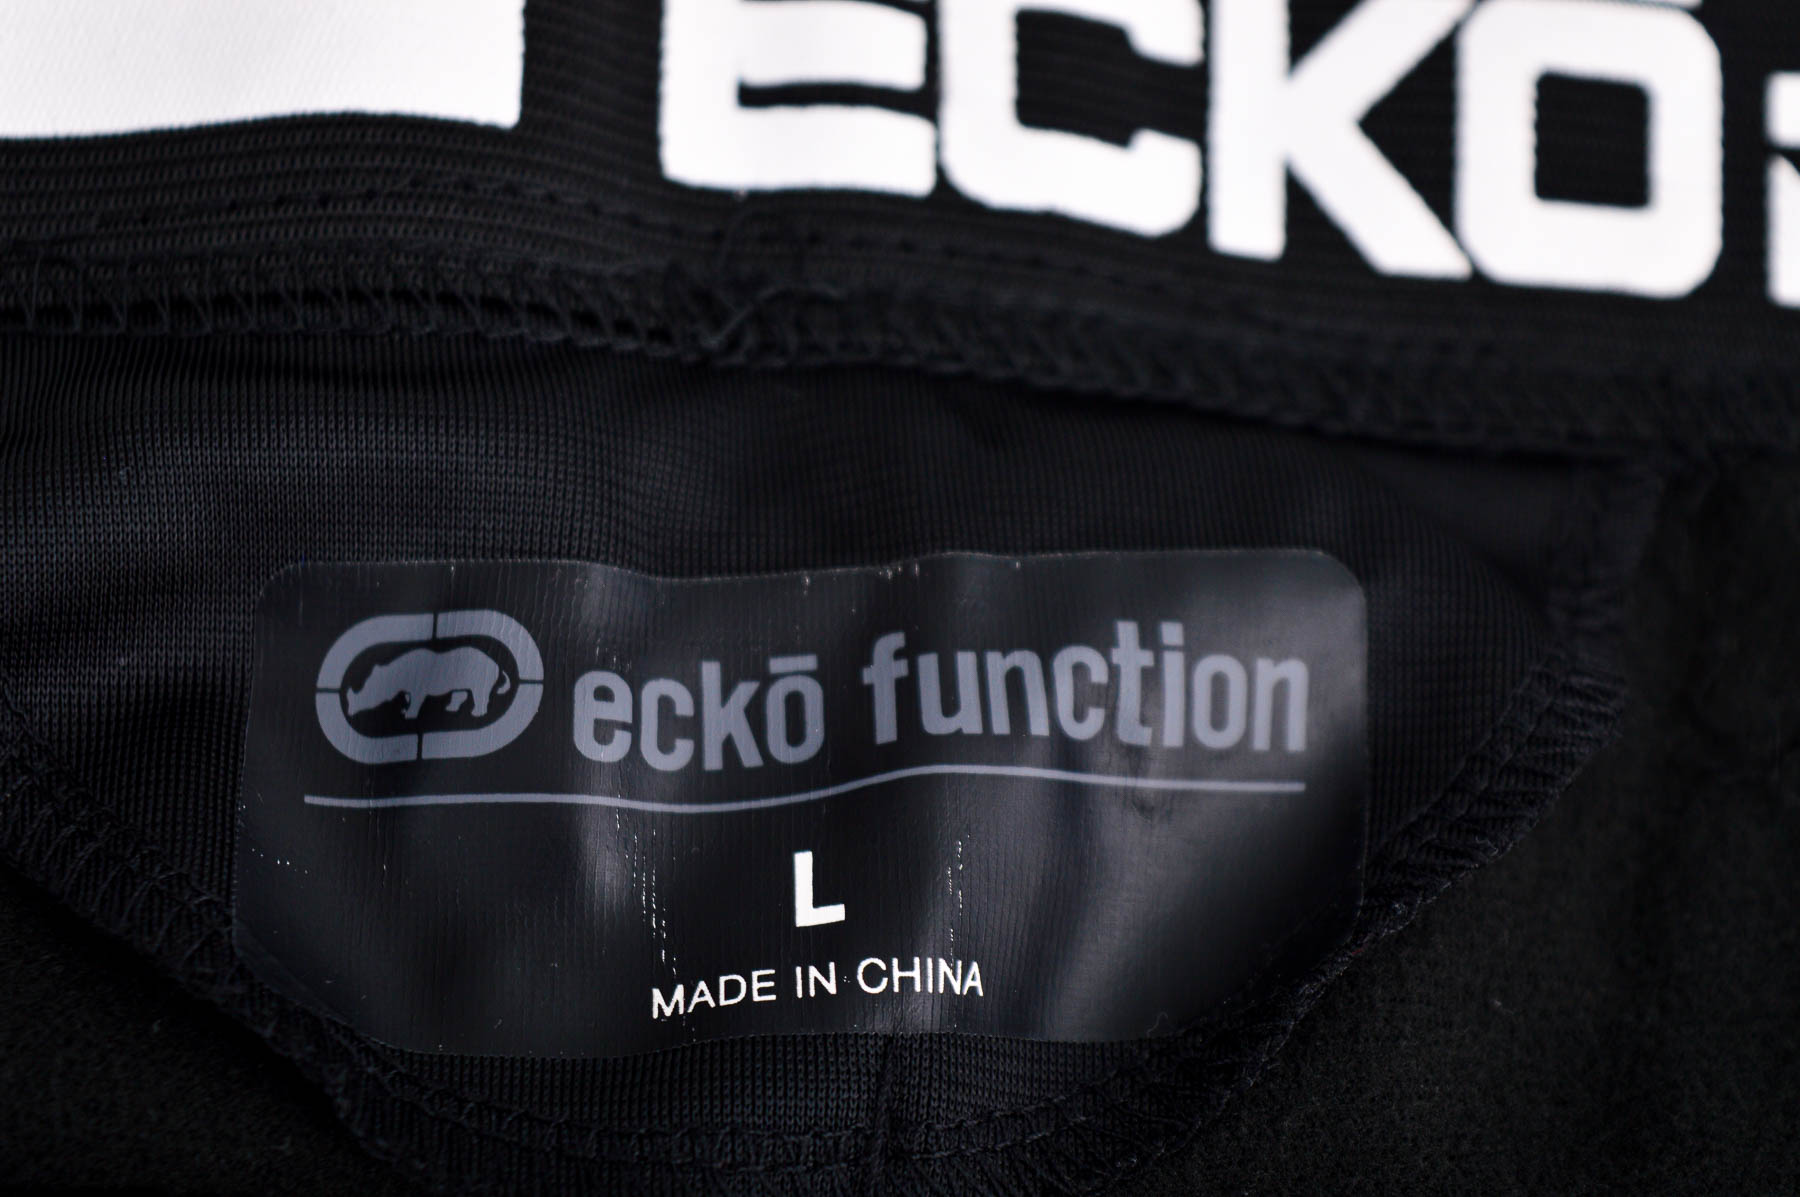 Αθλητικά παντελόνια ανδρών - Ecko Function - 2